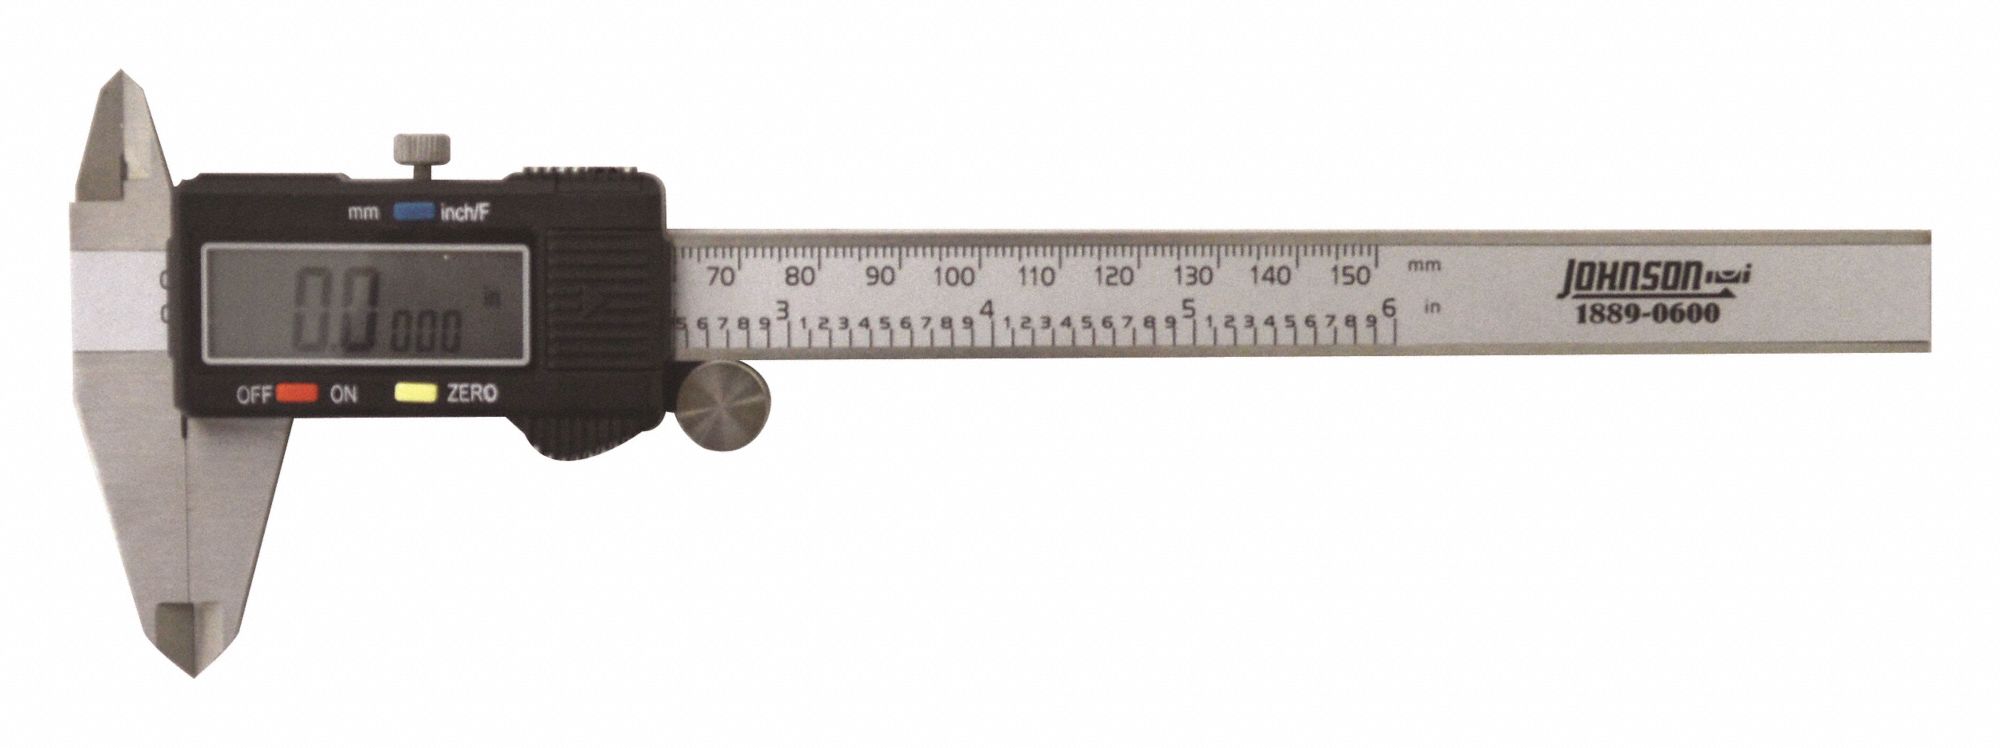 digital measuring calipers